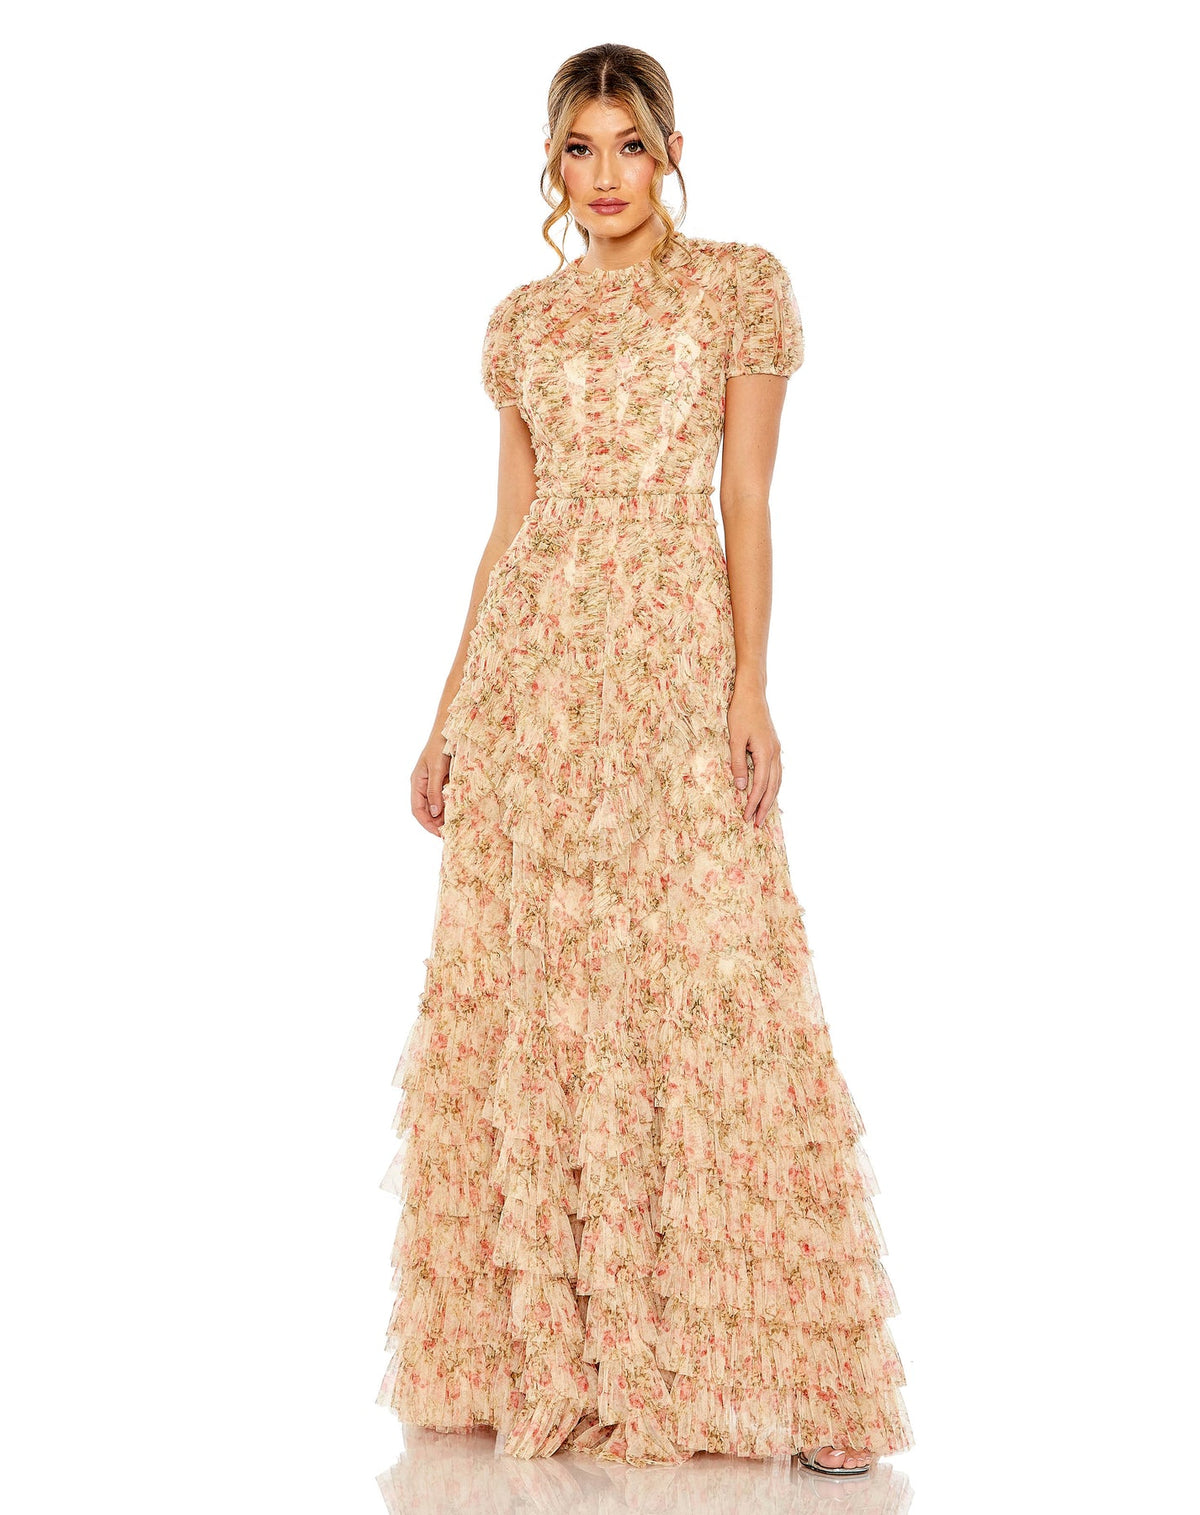 mac duggal, HIGH NECK FLORAL MESH RUFFLE DRESS, Style #8045, modest dress